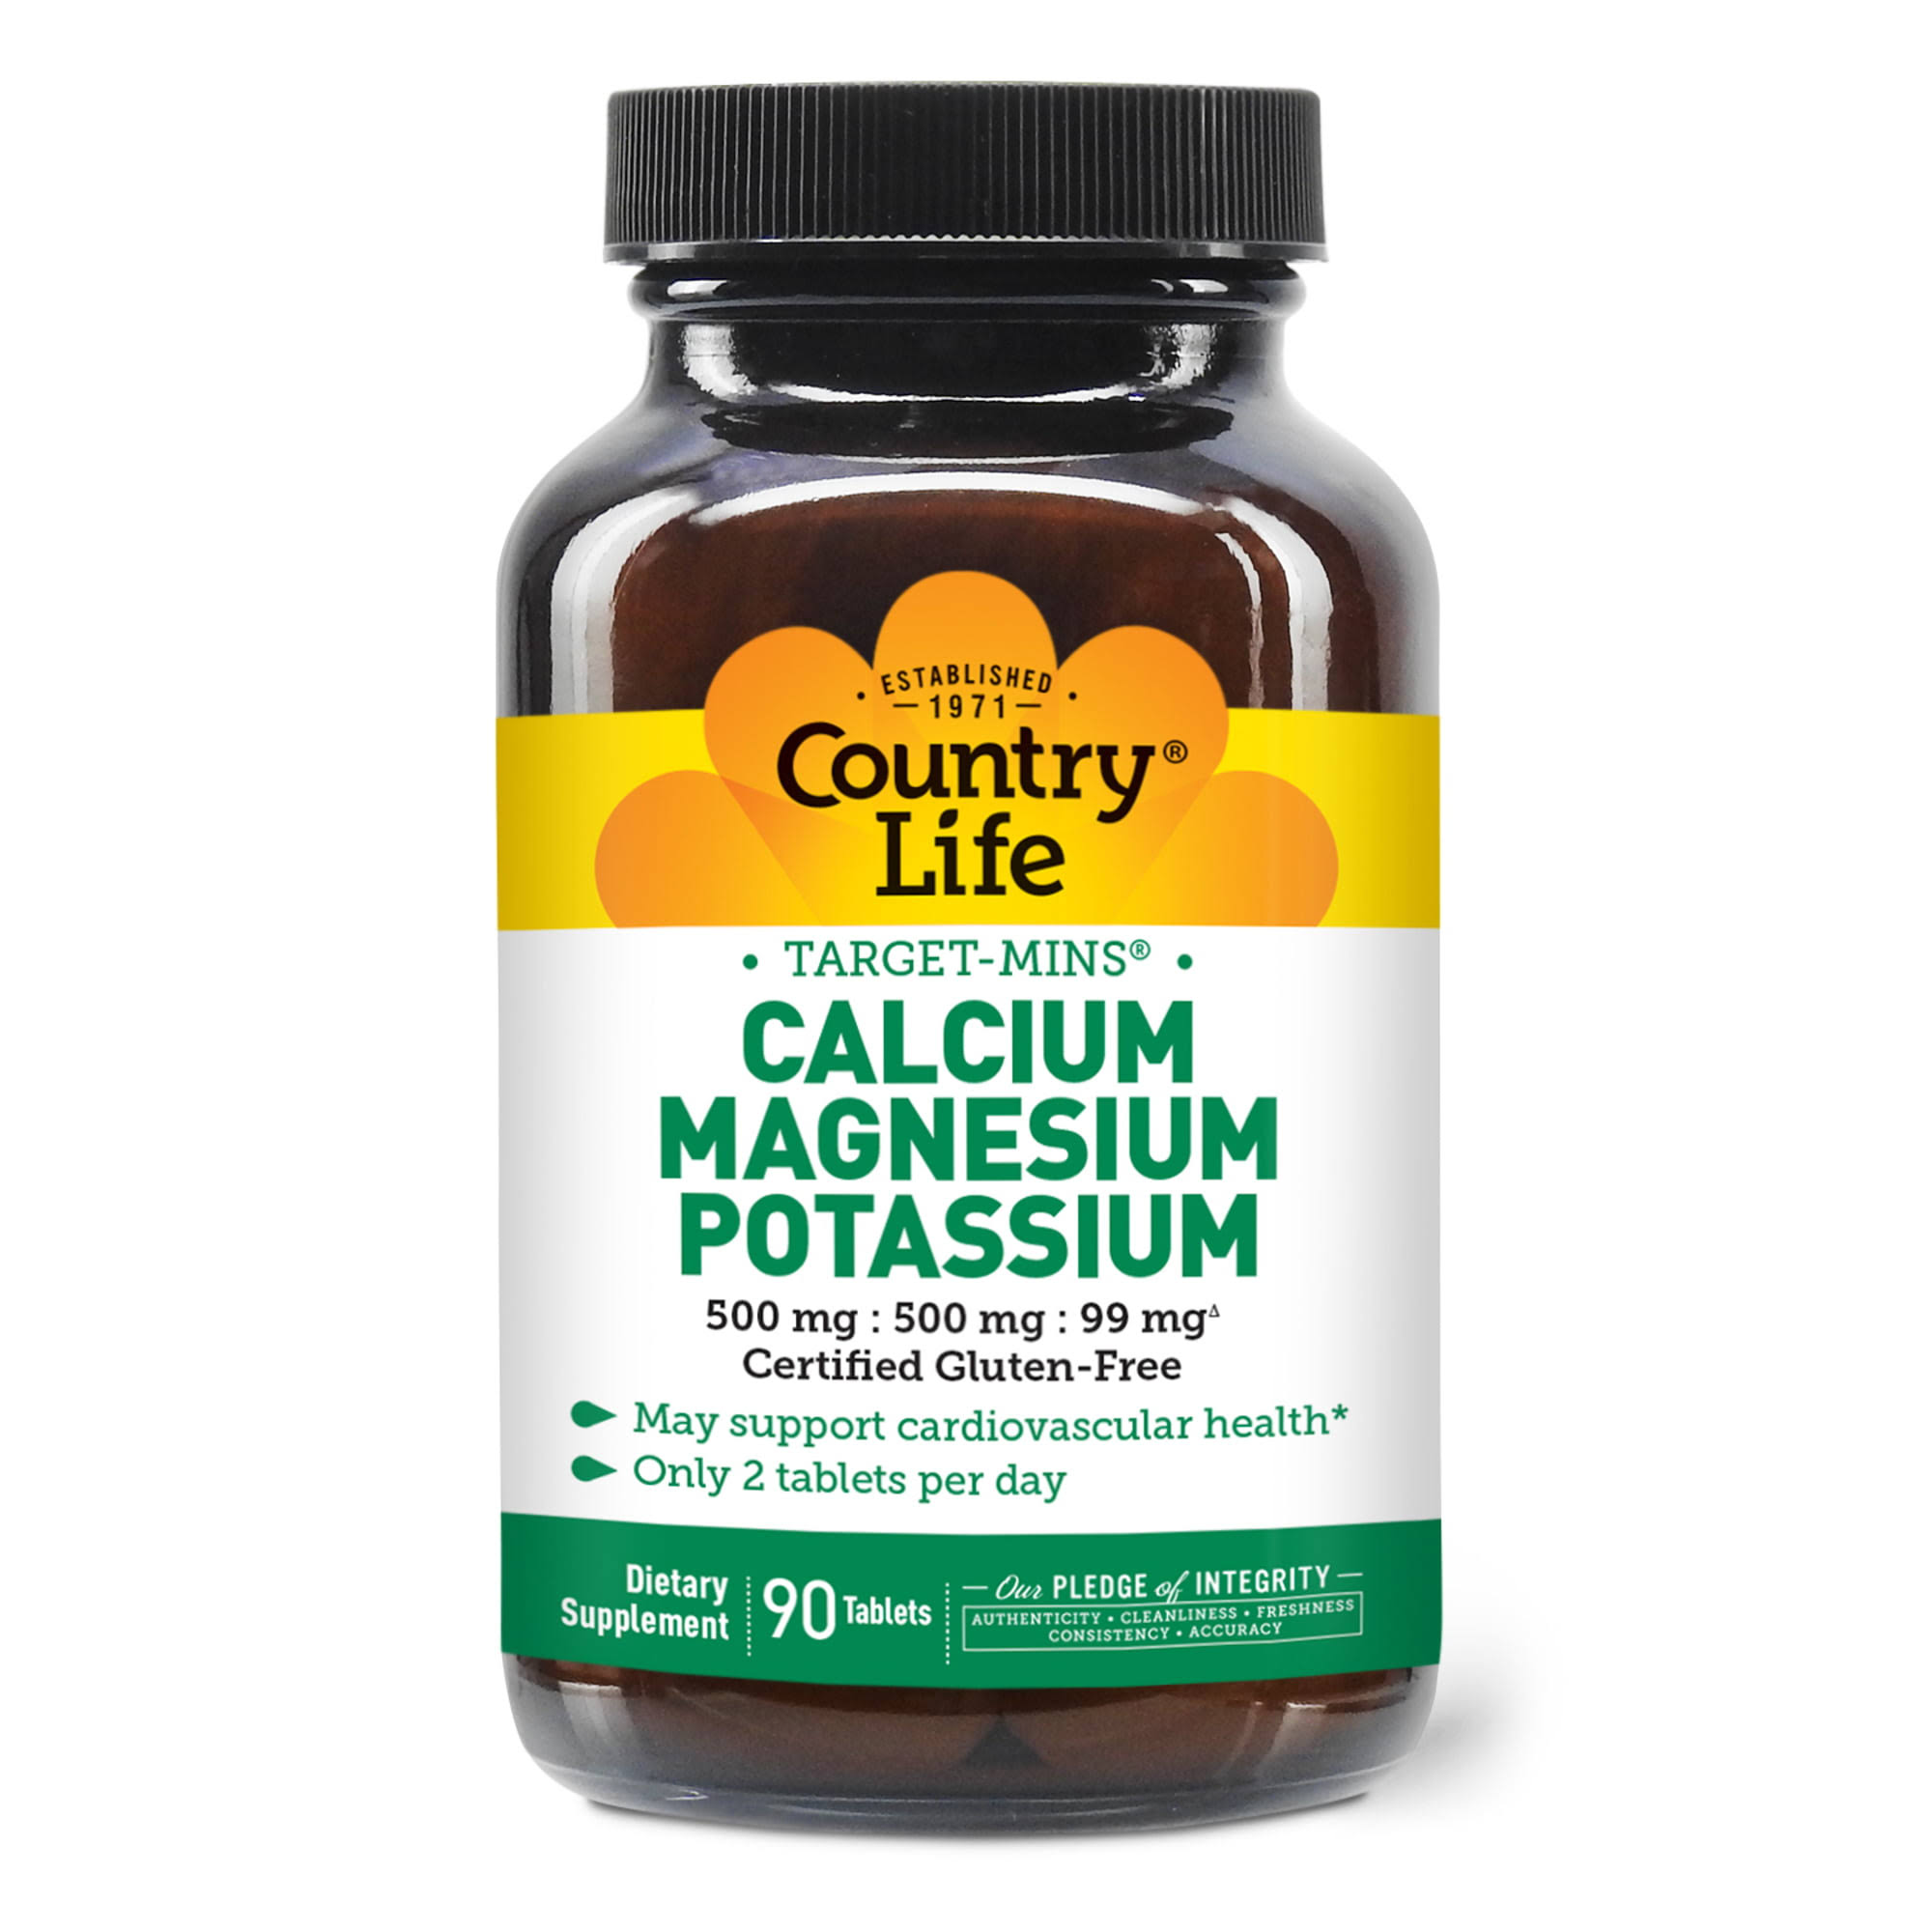 Country Life Calcium-Magnesium Potassium - 90 Tablets